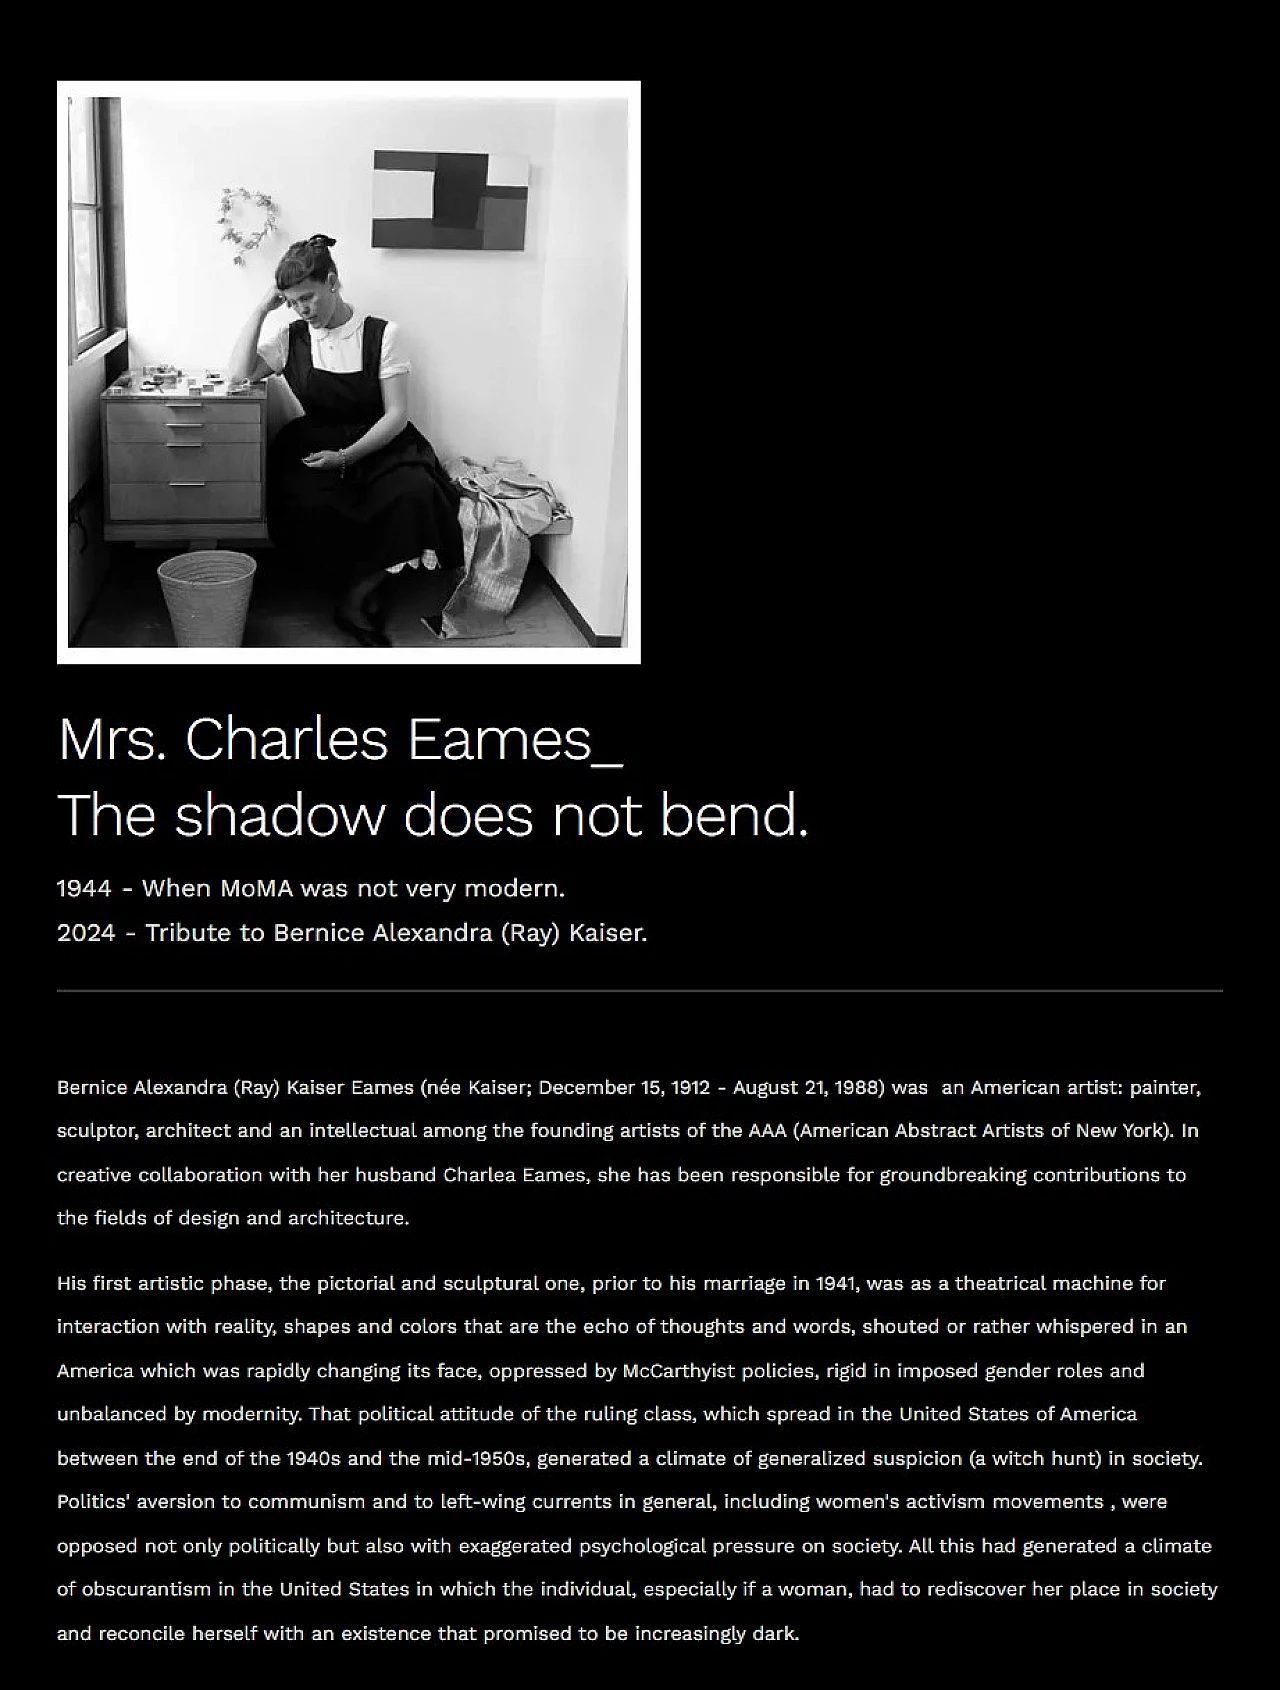 Charles Eames_ L'ombra non si piega, scultura in compensato curvato 34